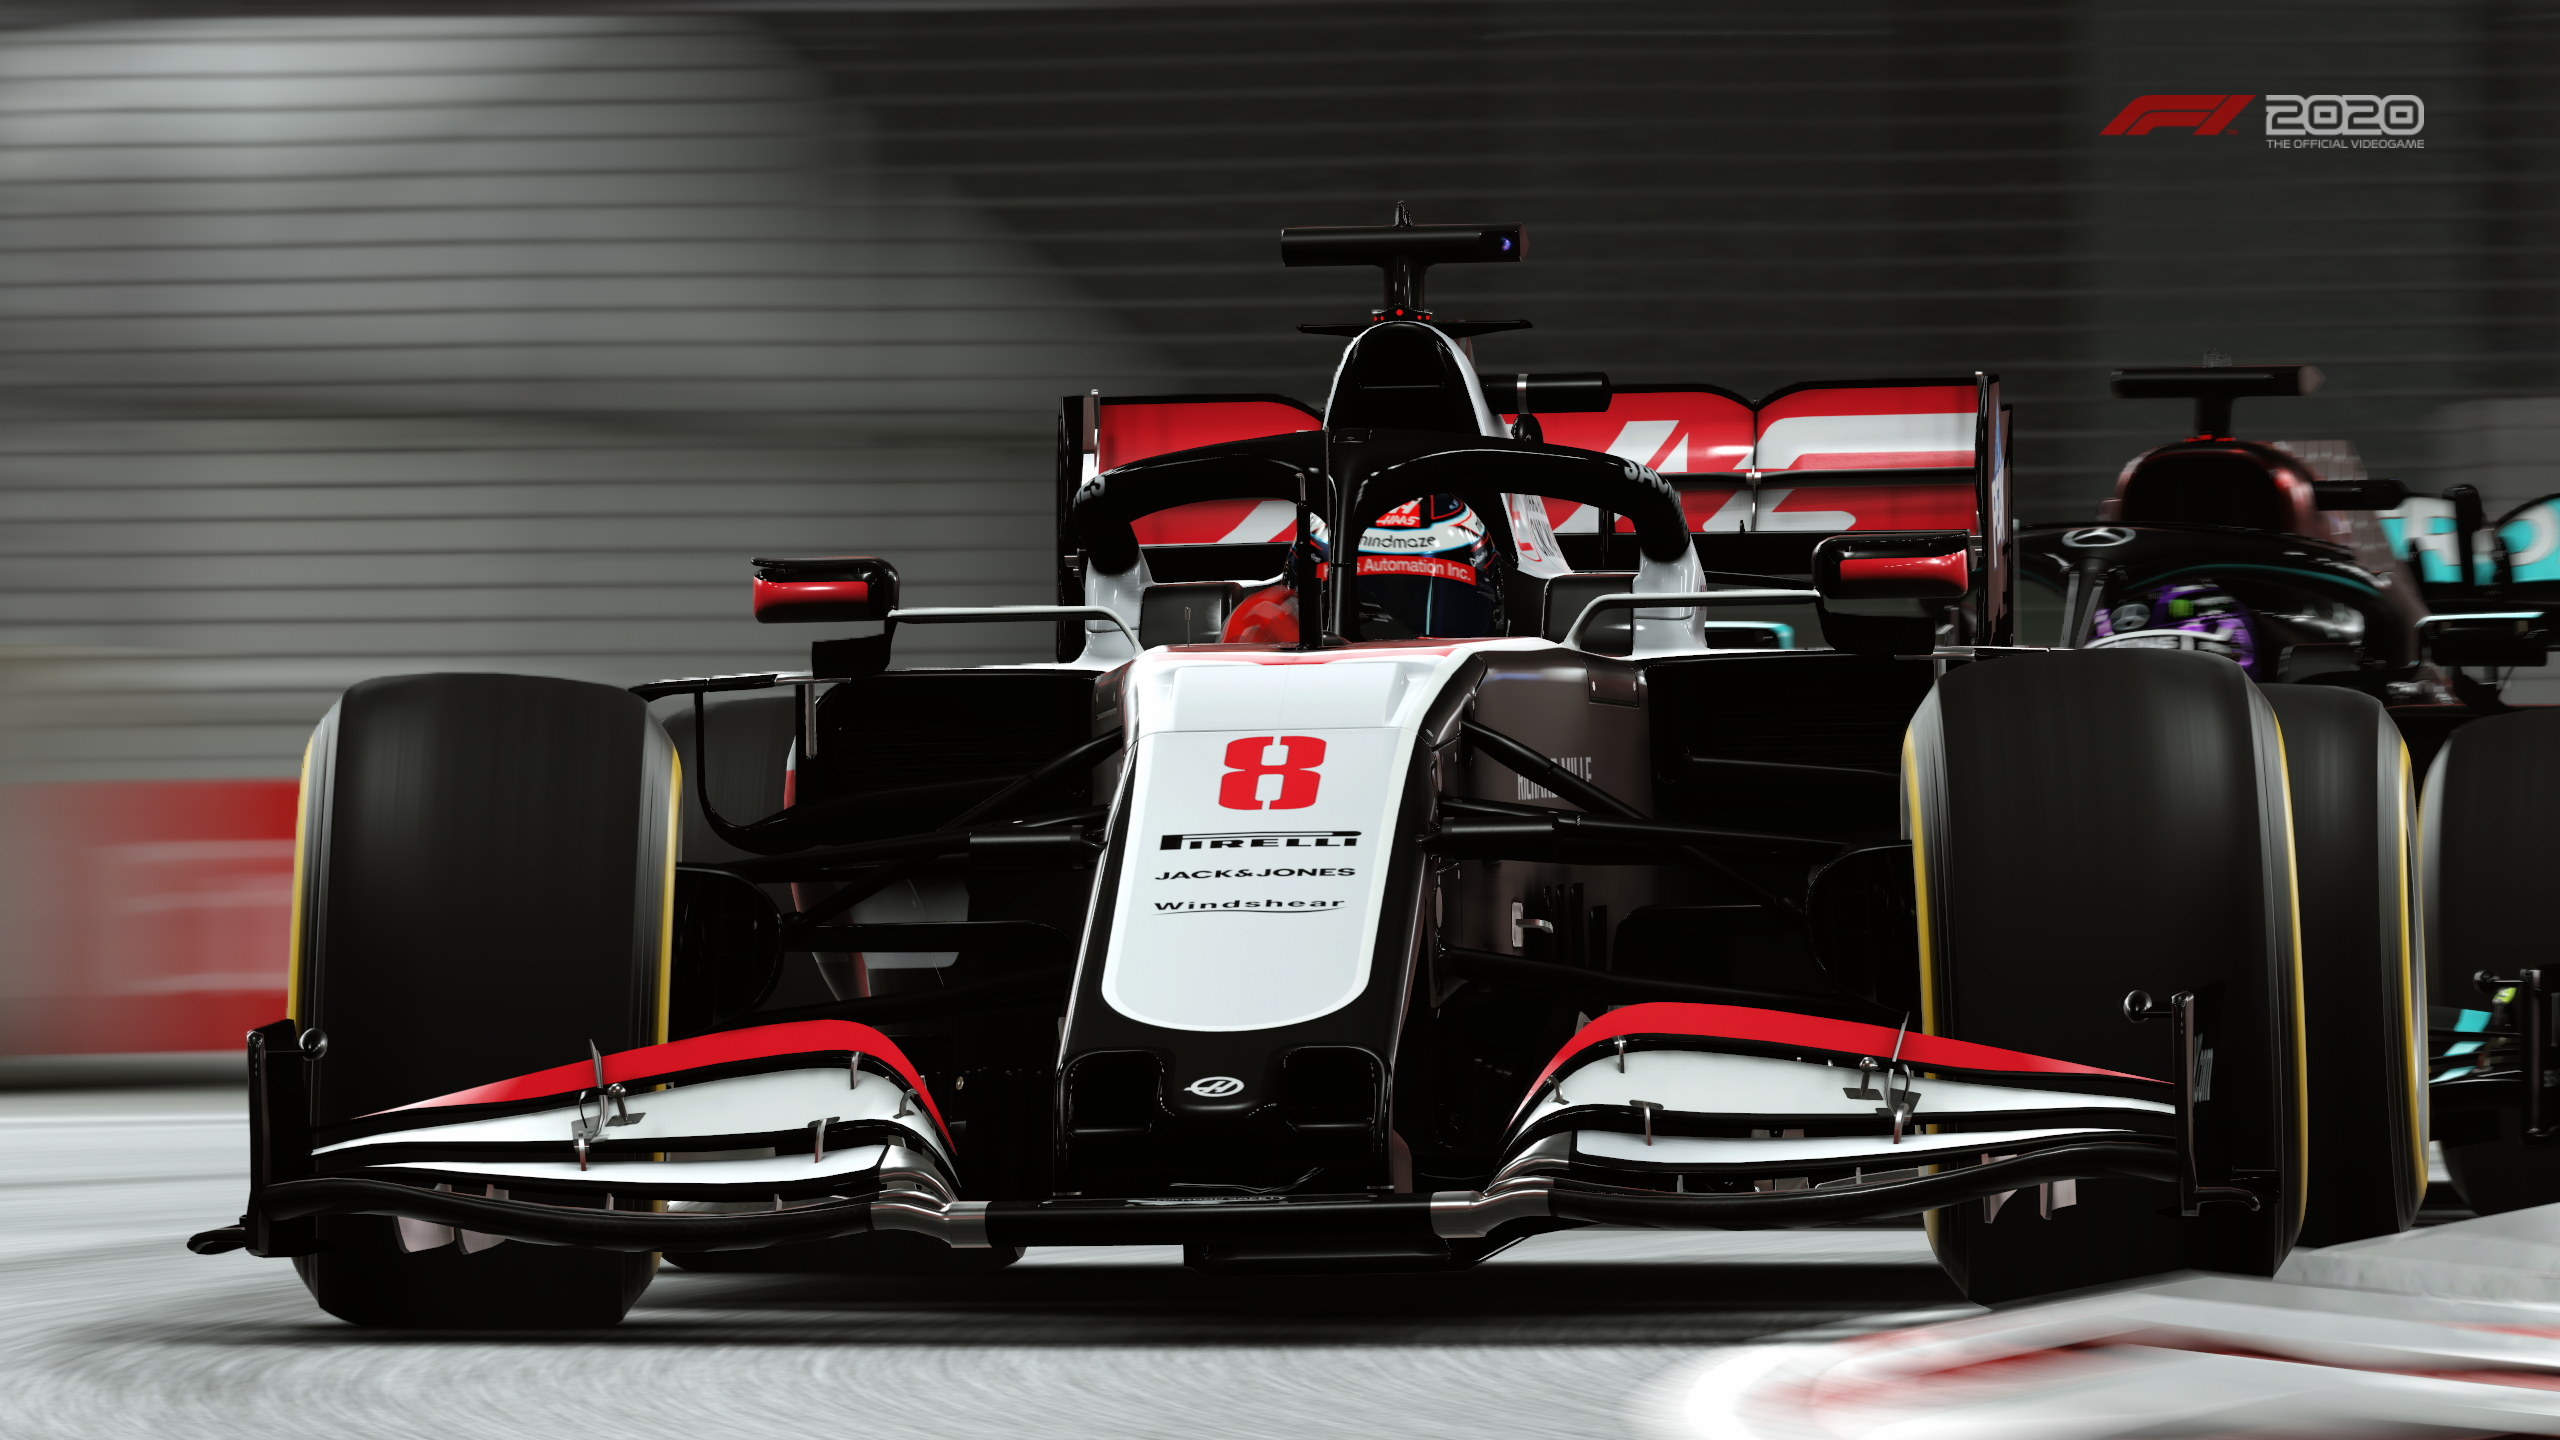 F1 2020 Haas F1 Team Vf 20 2560x1440